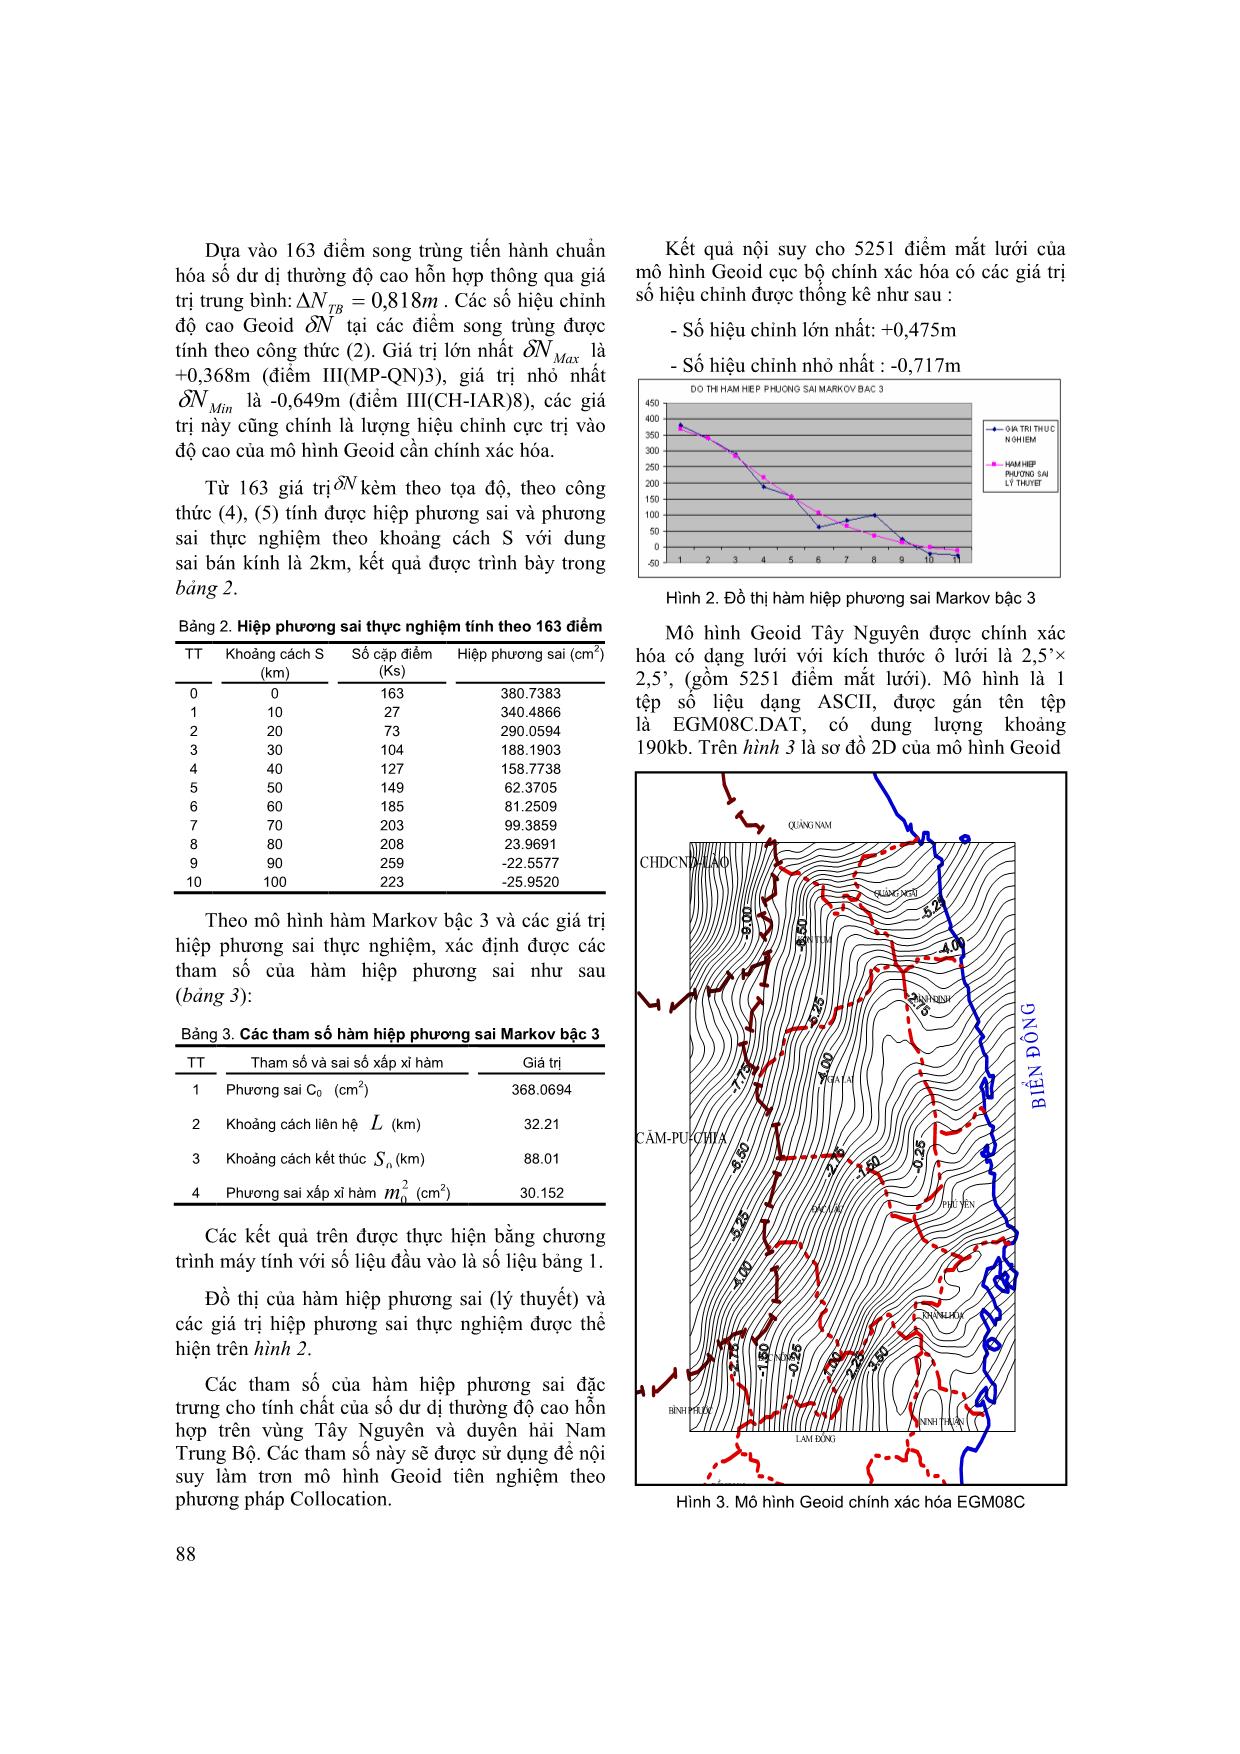 Chính xác hóa dị thường độ cao EGM2008 dựa trên số liệu GPS-thuỷ chuẩn trên phạm vi cục bộ vùng Tây Nguyên và duyên hải Nam Trung Bộ trang 4